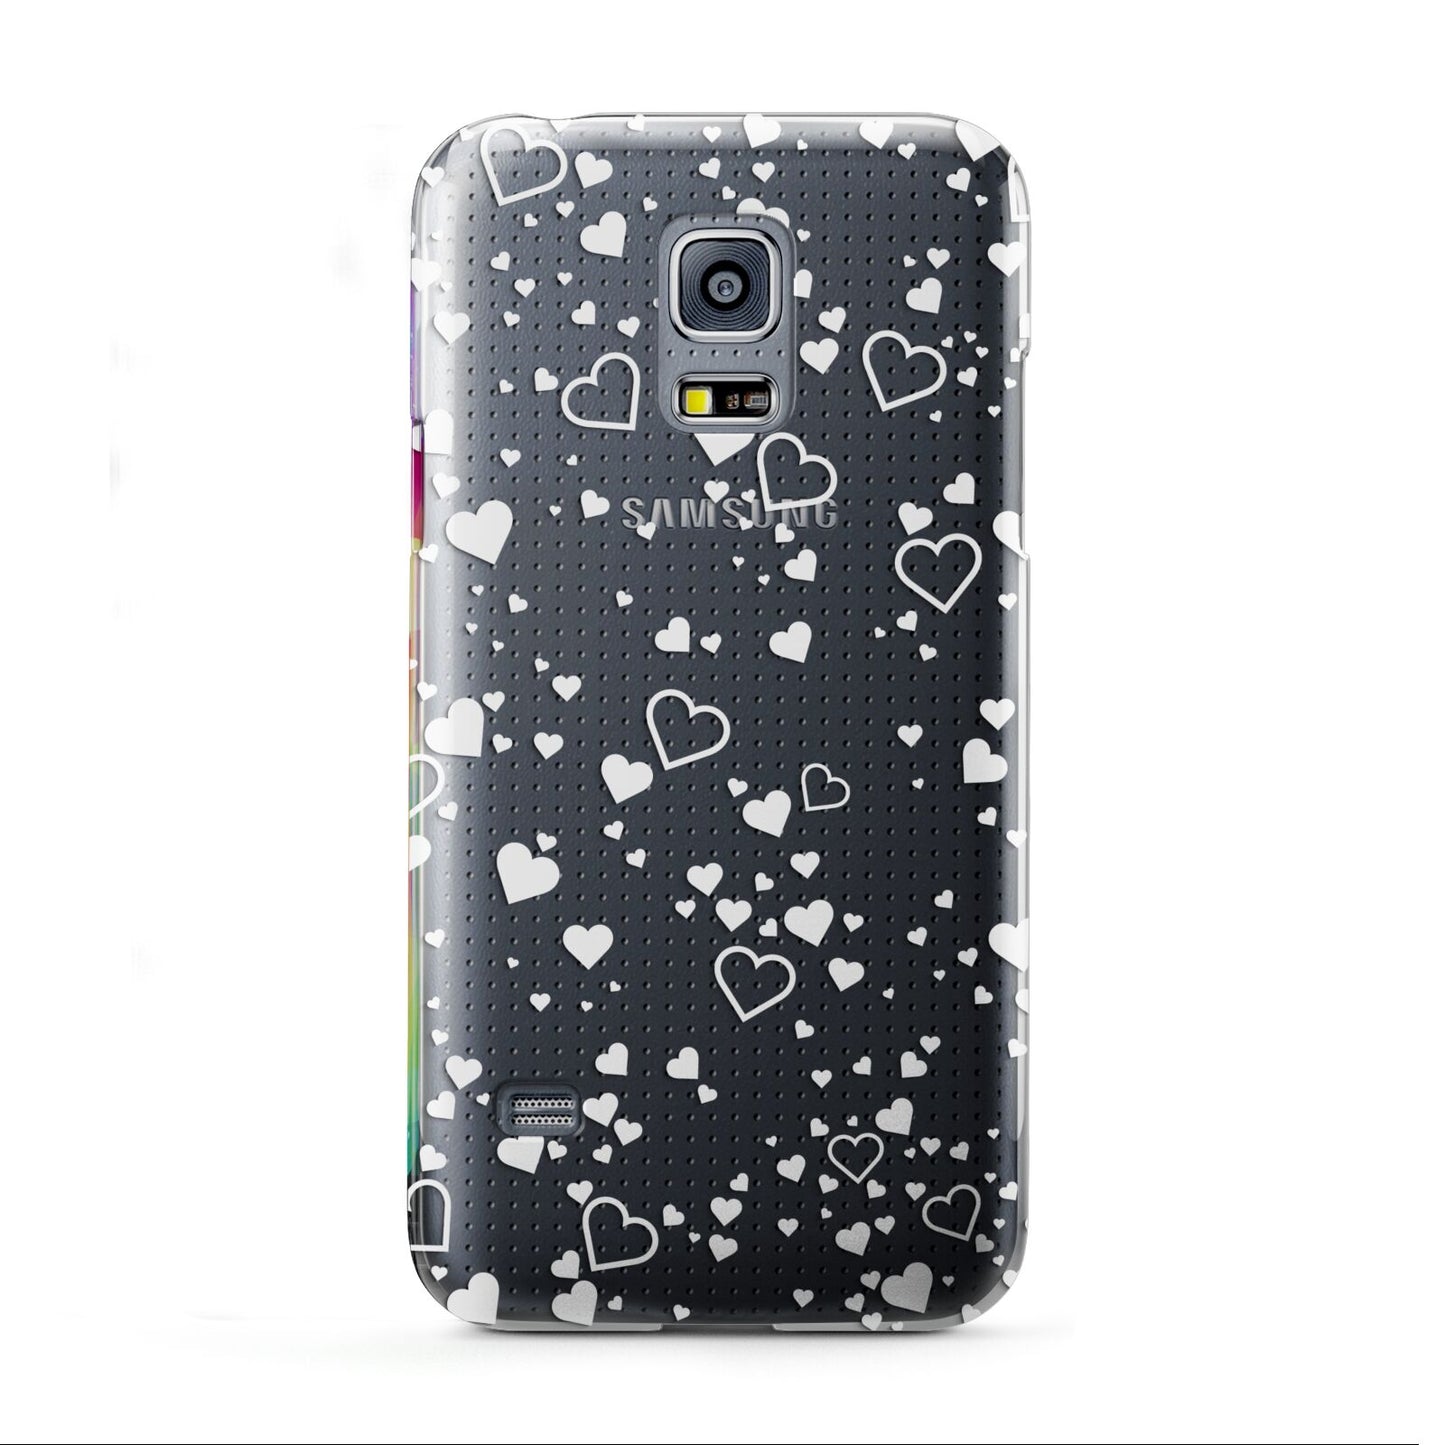 White Heart Samsung Galaxy S5 Mini Case